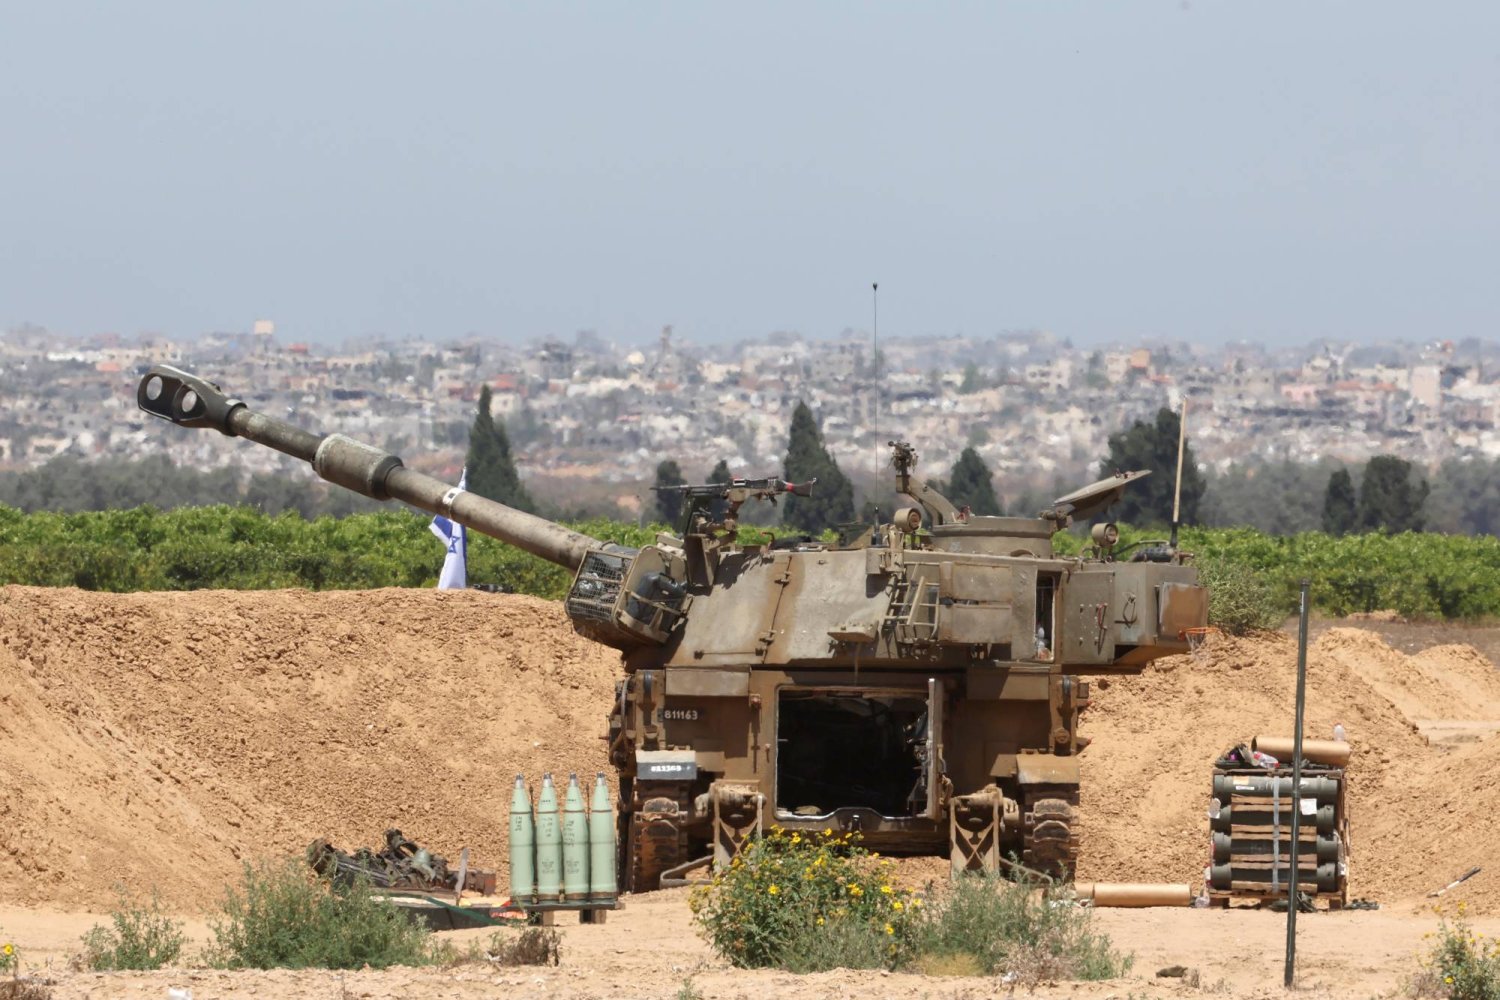 مدفعية إسرائيلية في موقع غير معلوم بالقرب من السياج الحدودي مع قطاع غزة اليوم (إ.ب.أ)